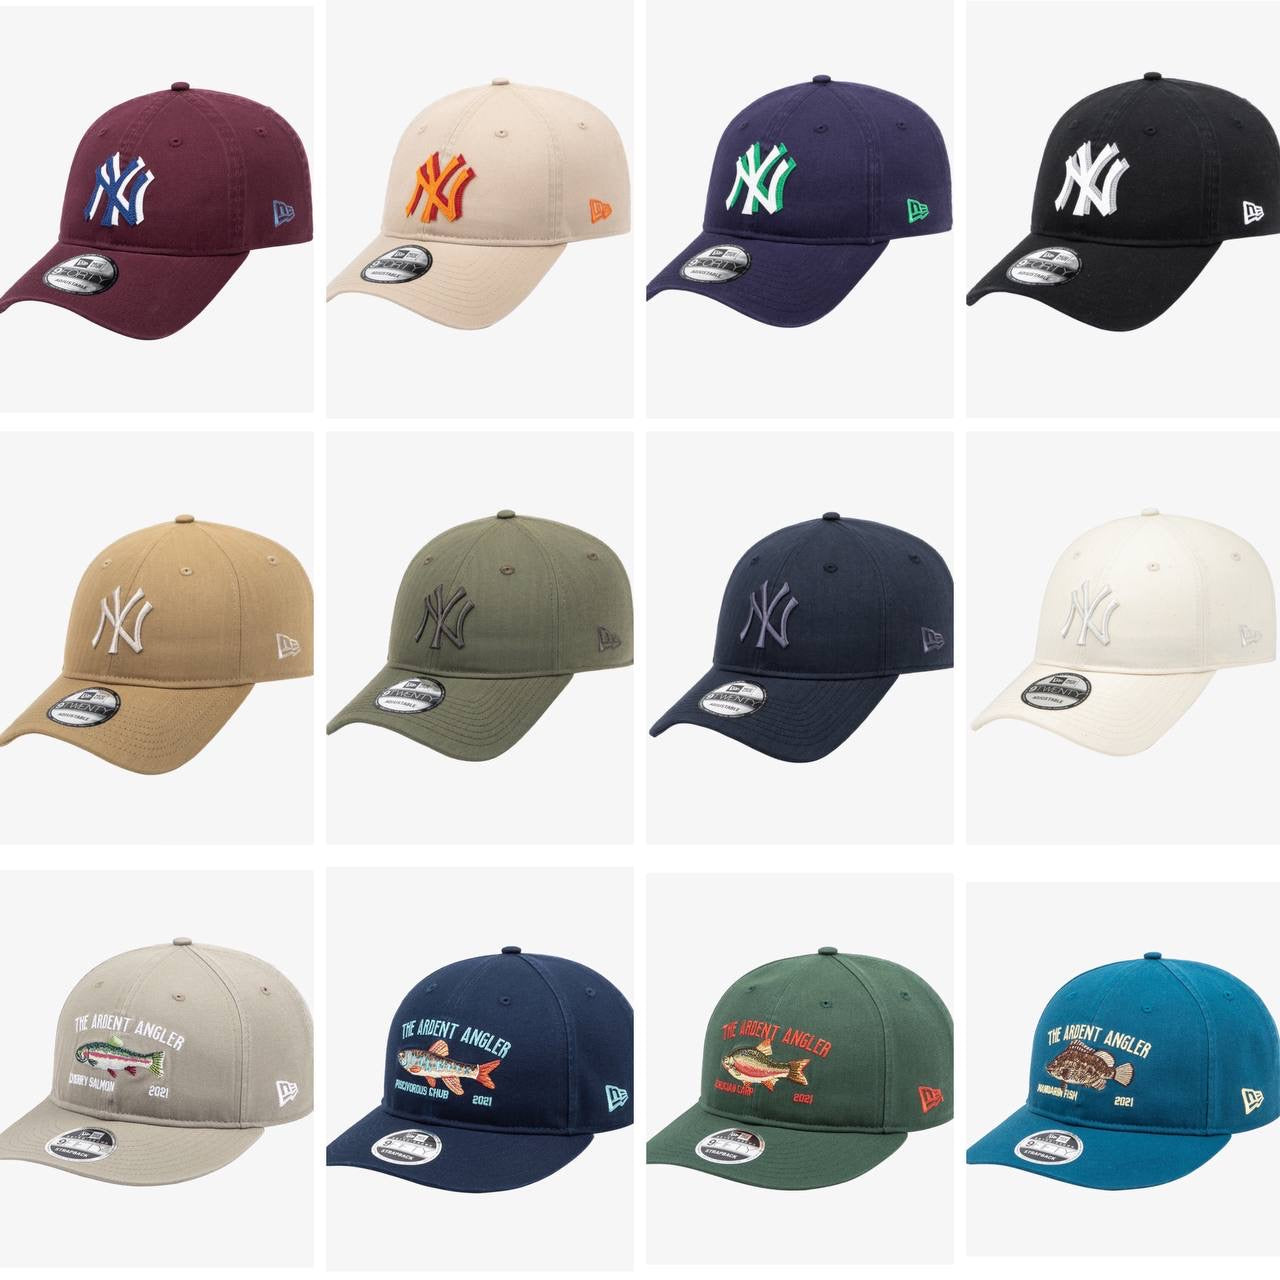 MLB YANKEES NEWERA Cap - Collection #2